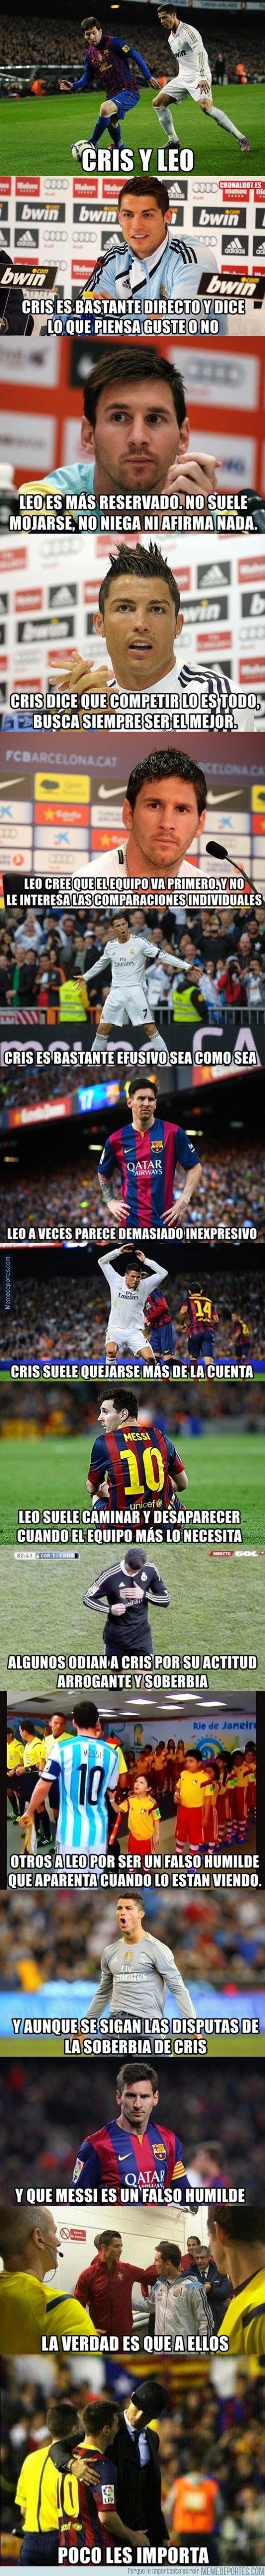 727392 - La maravillosa época de Cristiano y Messi